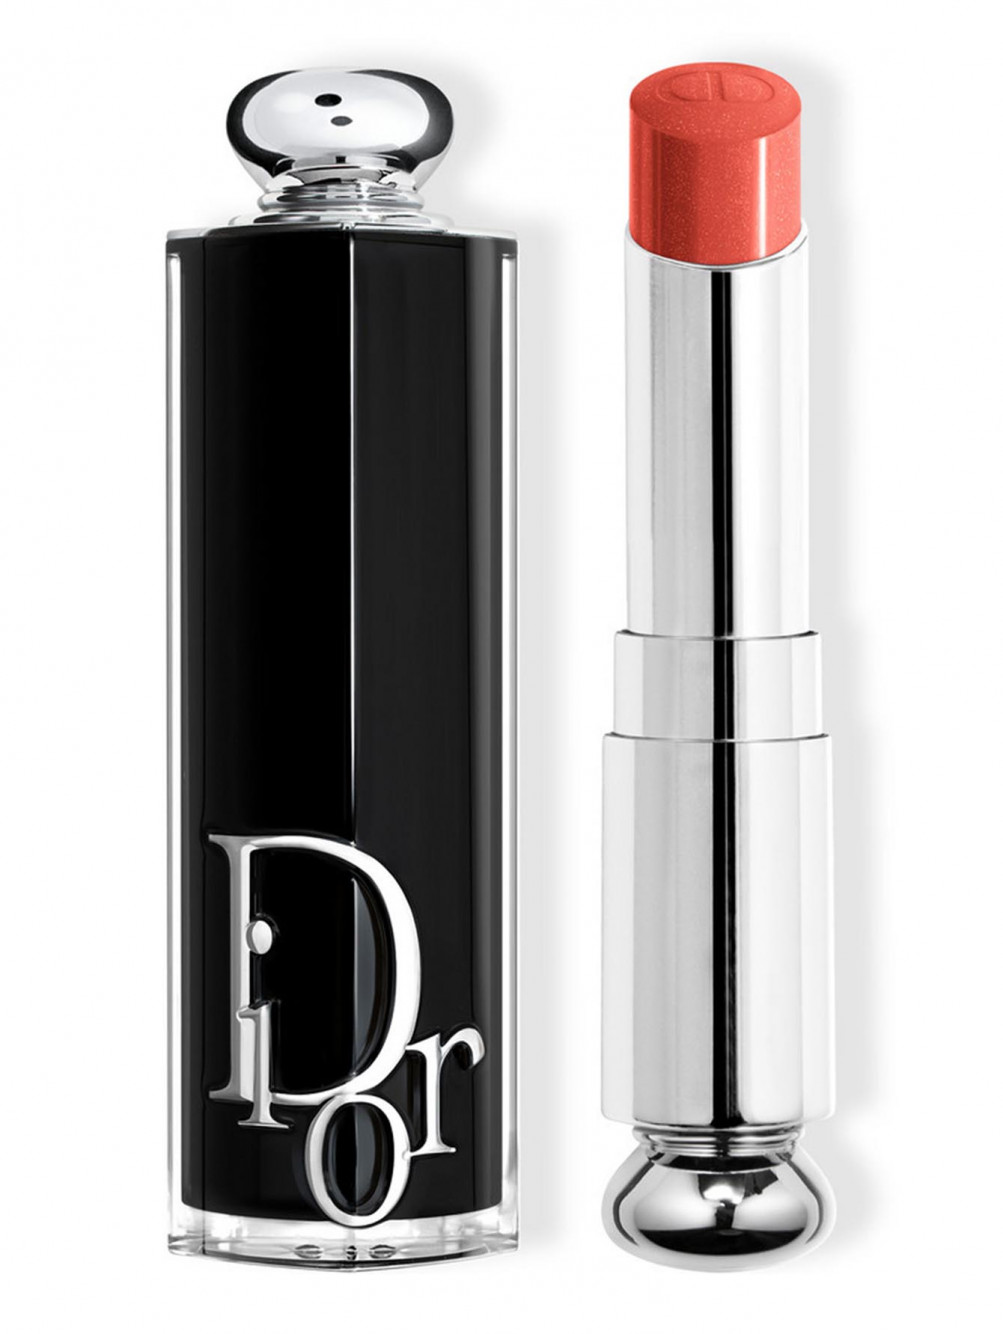 Помада для губ Dior Addict, Ультра Диор 636, 3,2 г - Общий вид